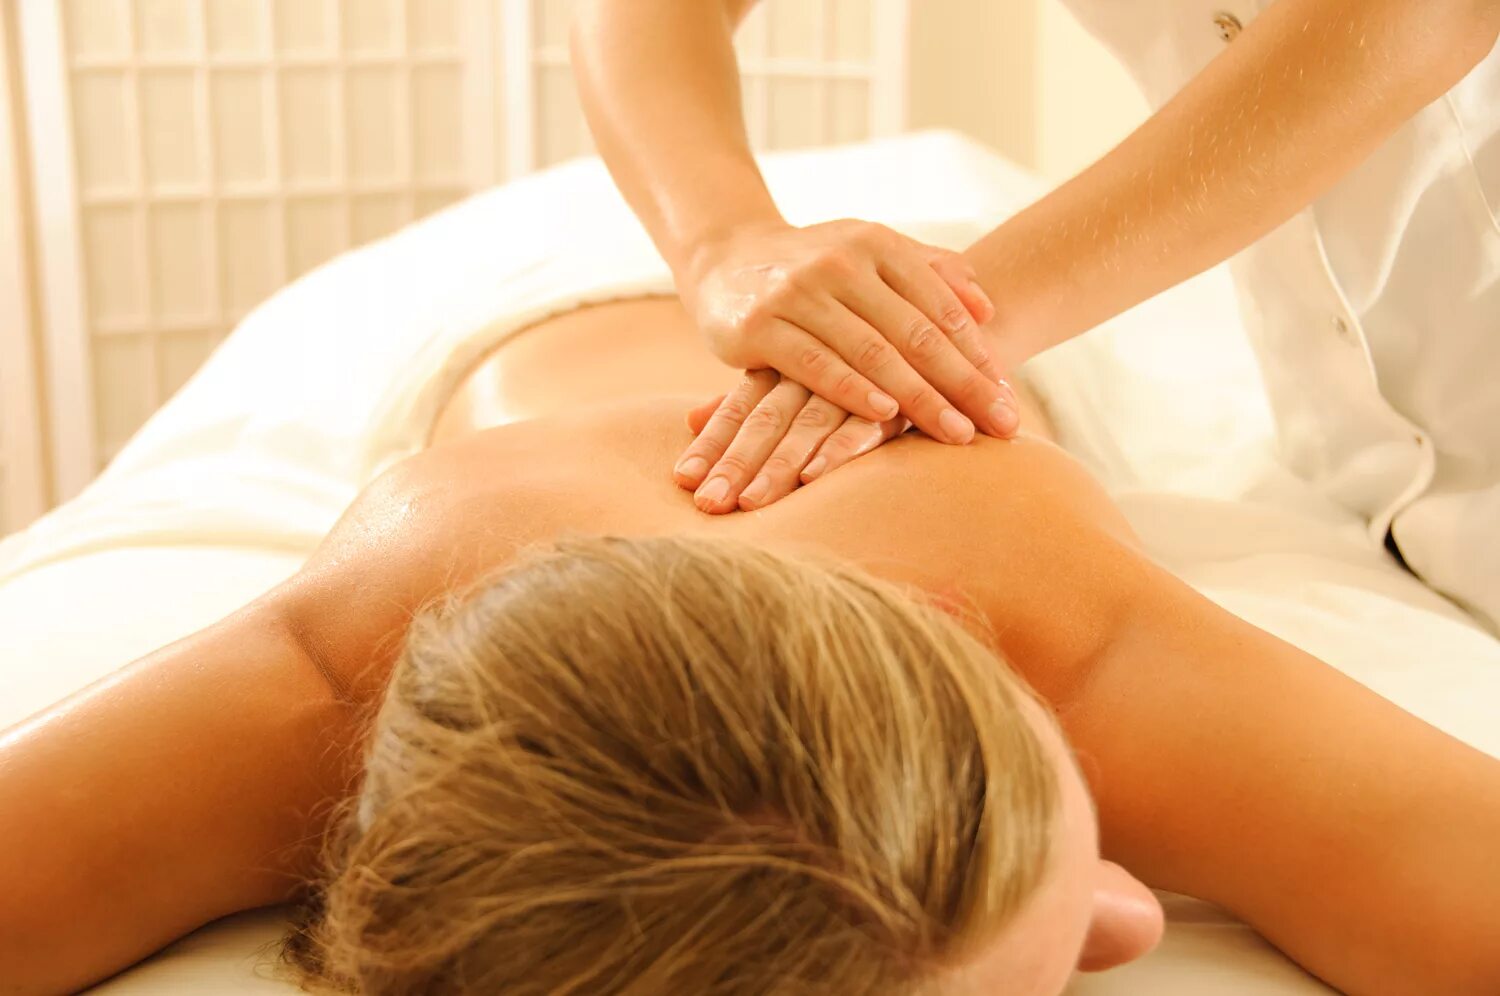 Intimate massage. Классический массаж. Массаж спины. Классический лечебный массаж. Классический массаж спины.